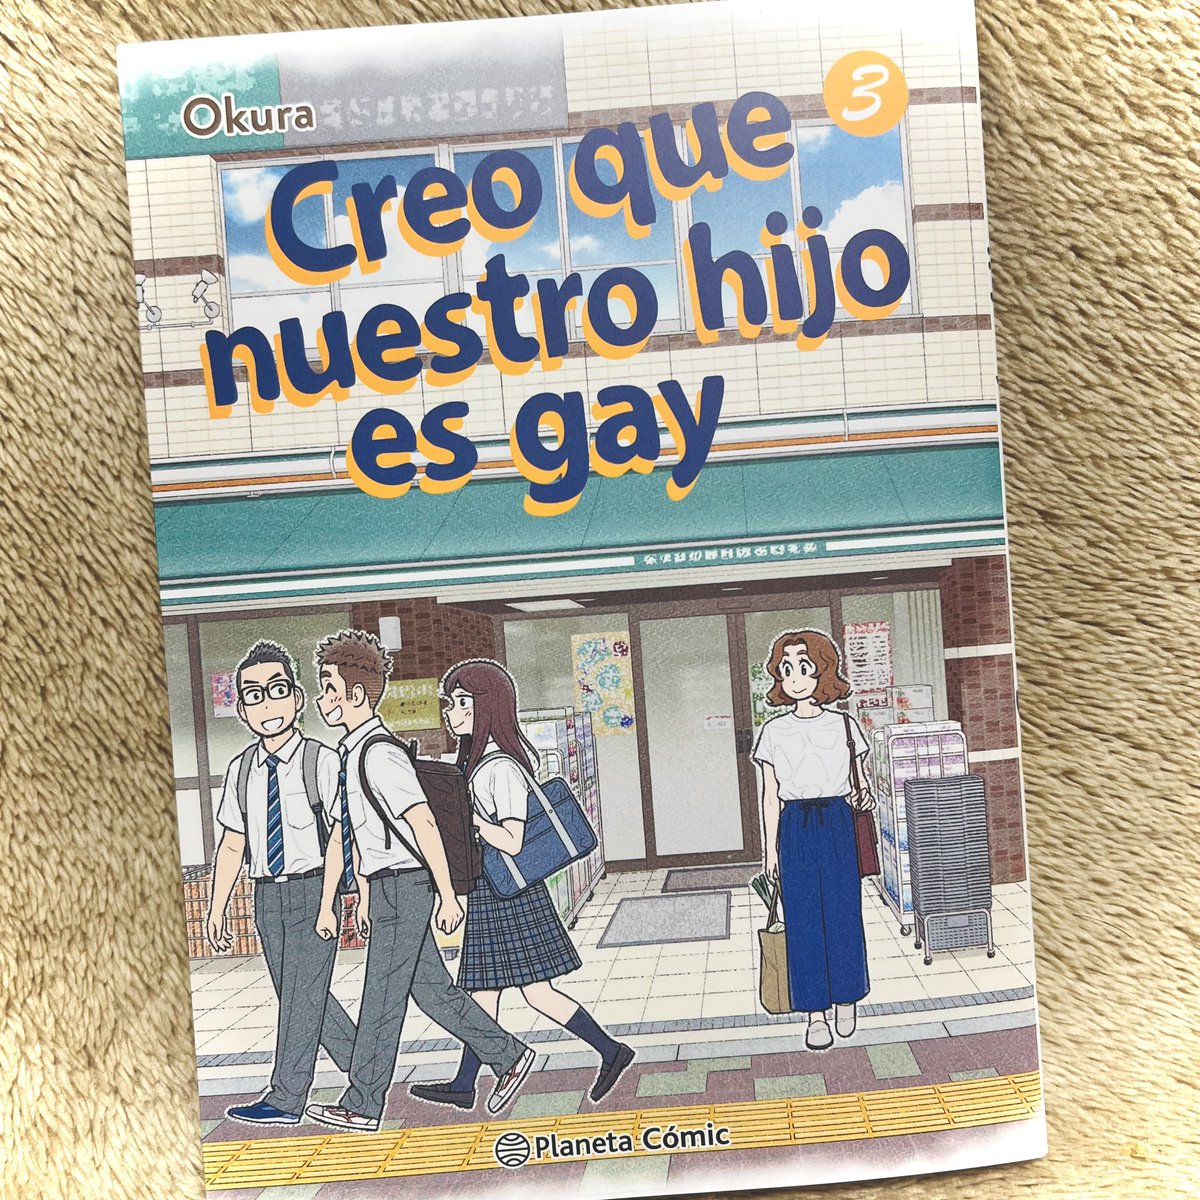 『うちの息子はたぶんゲイ』スペイン語版単行本3巻が届きました!スペイン語圏のみなさんに楽しんでいただけますように。 #うちの息子はたぶんゲイ